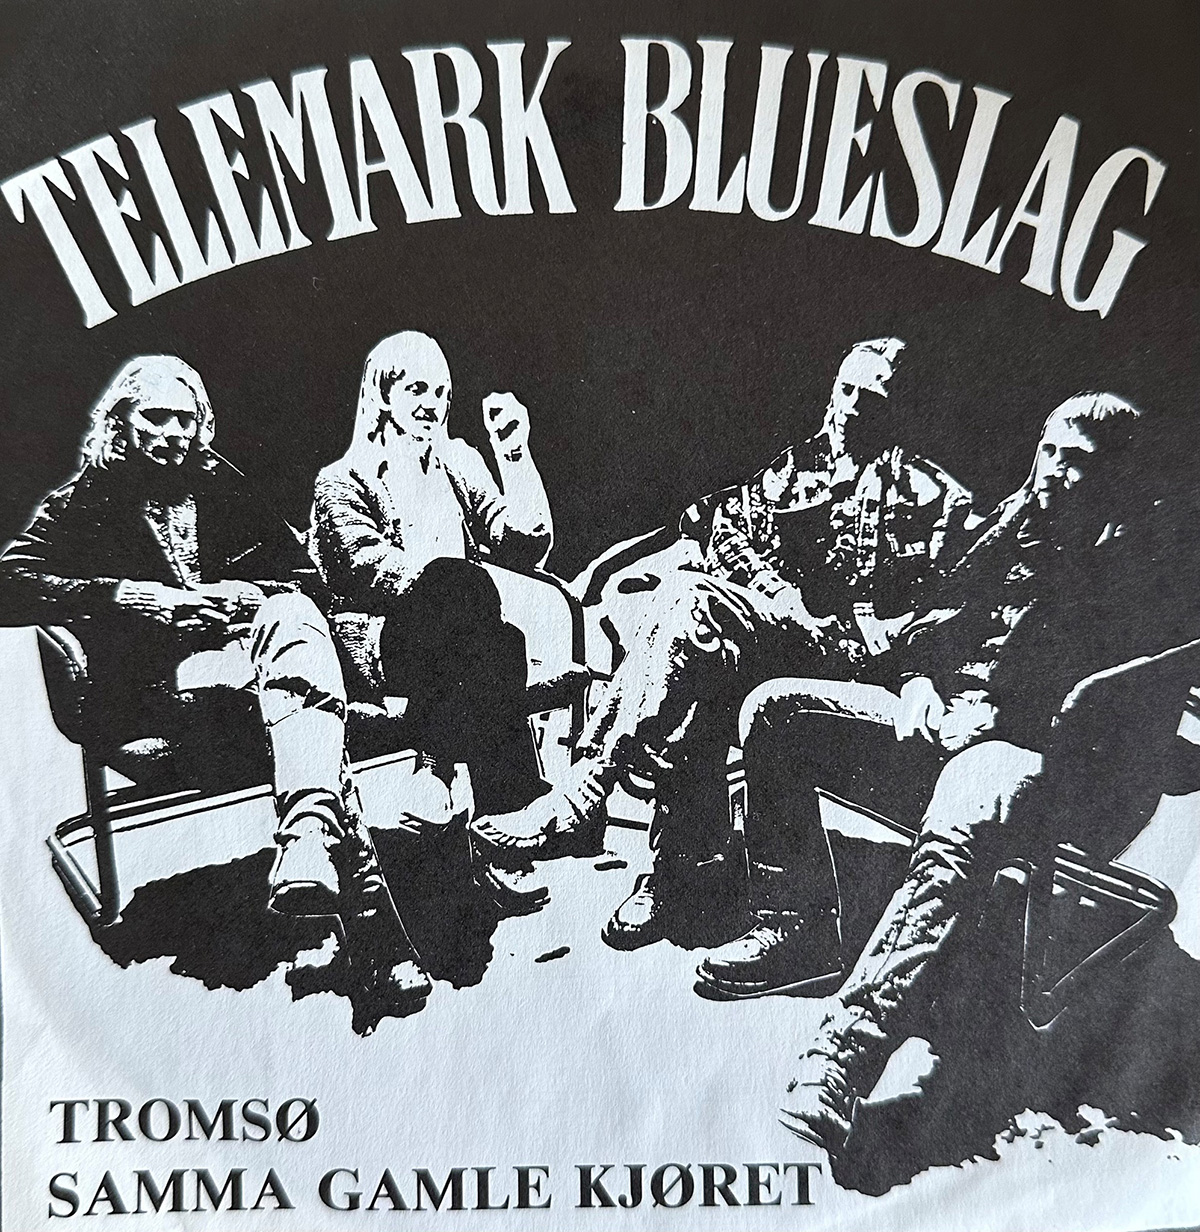 Telemark Blueslags singleplate fra 1980.